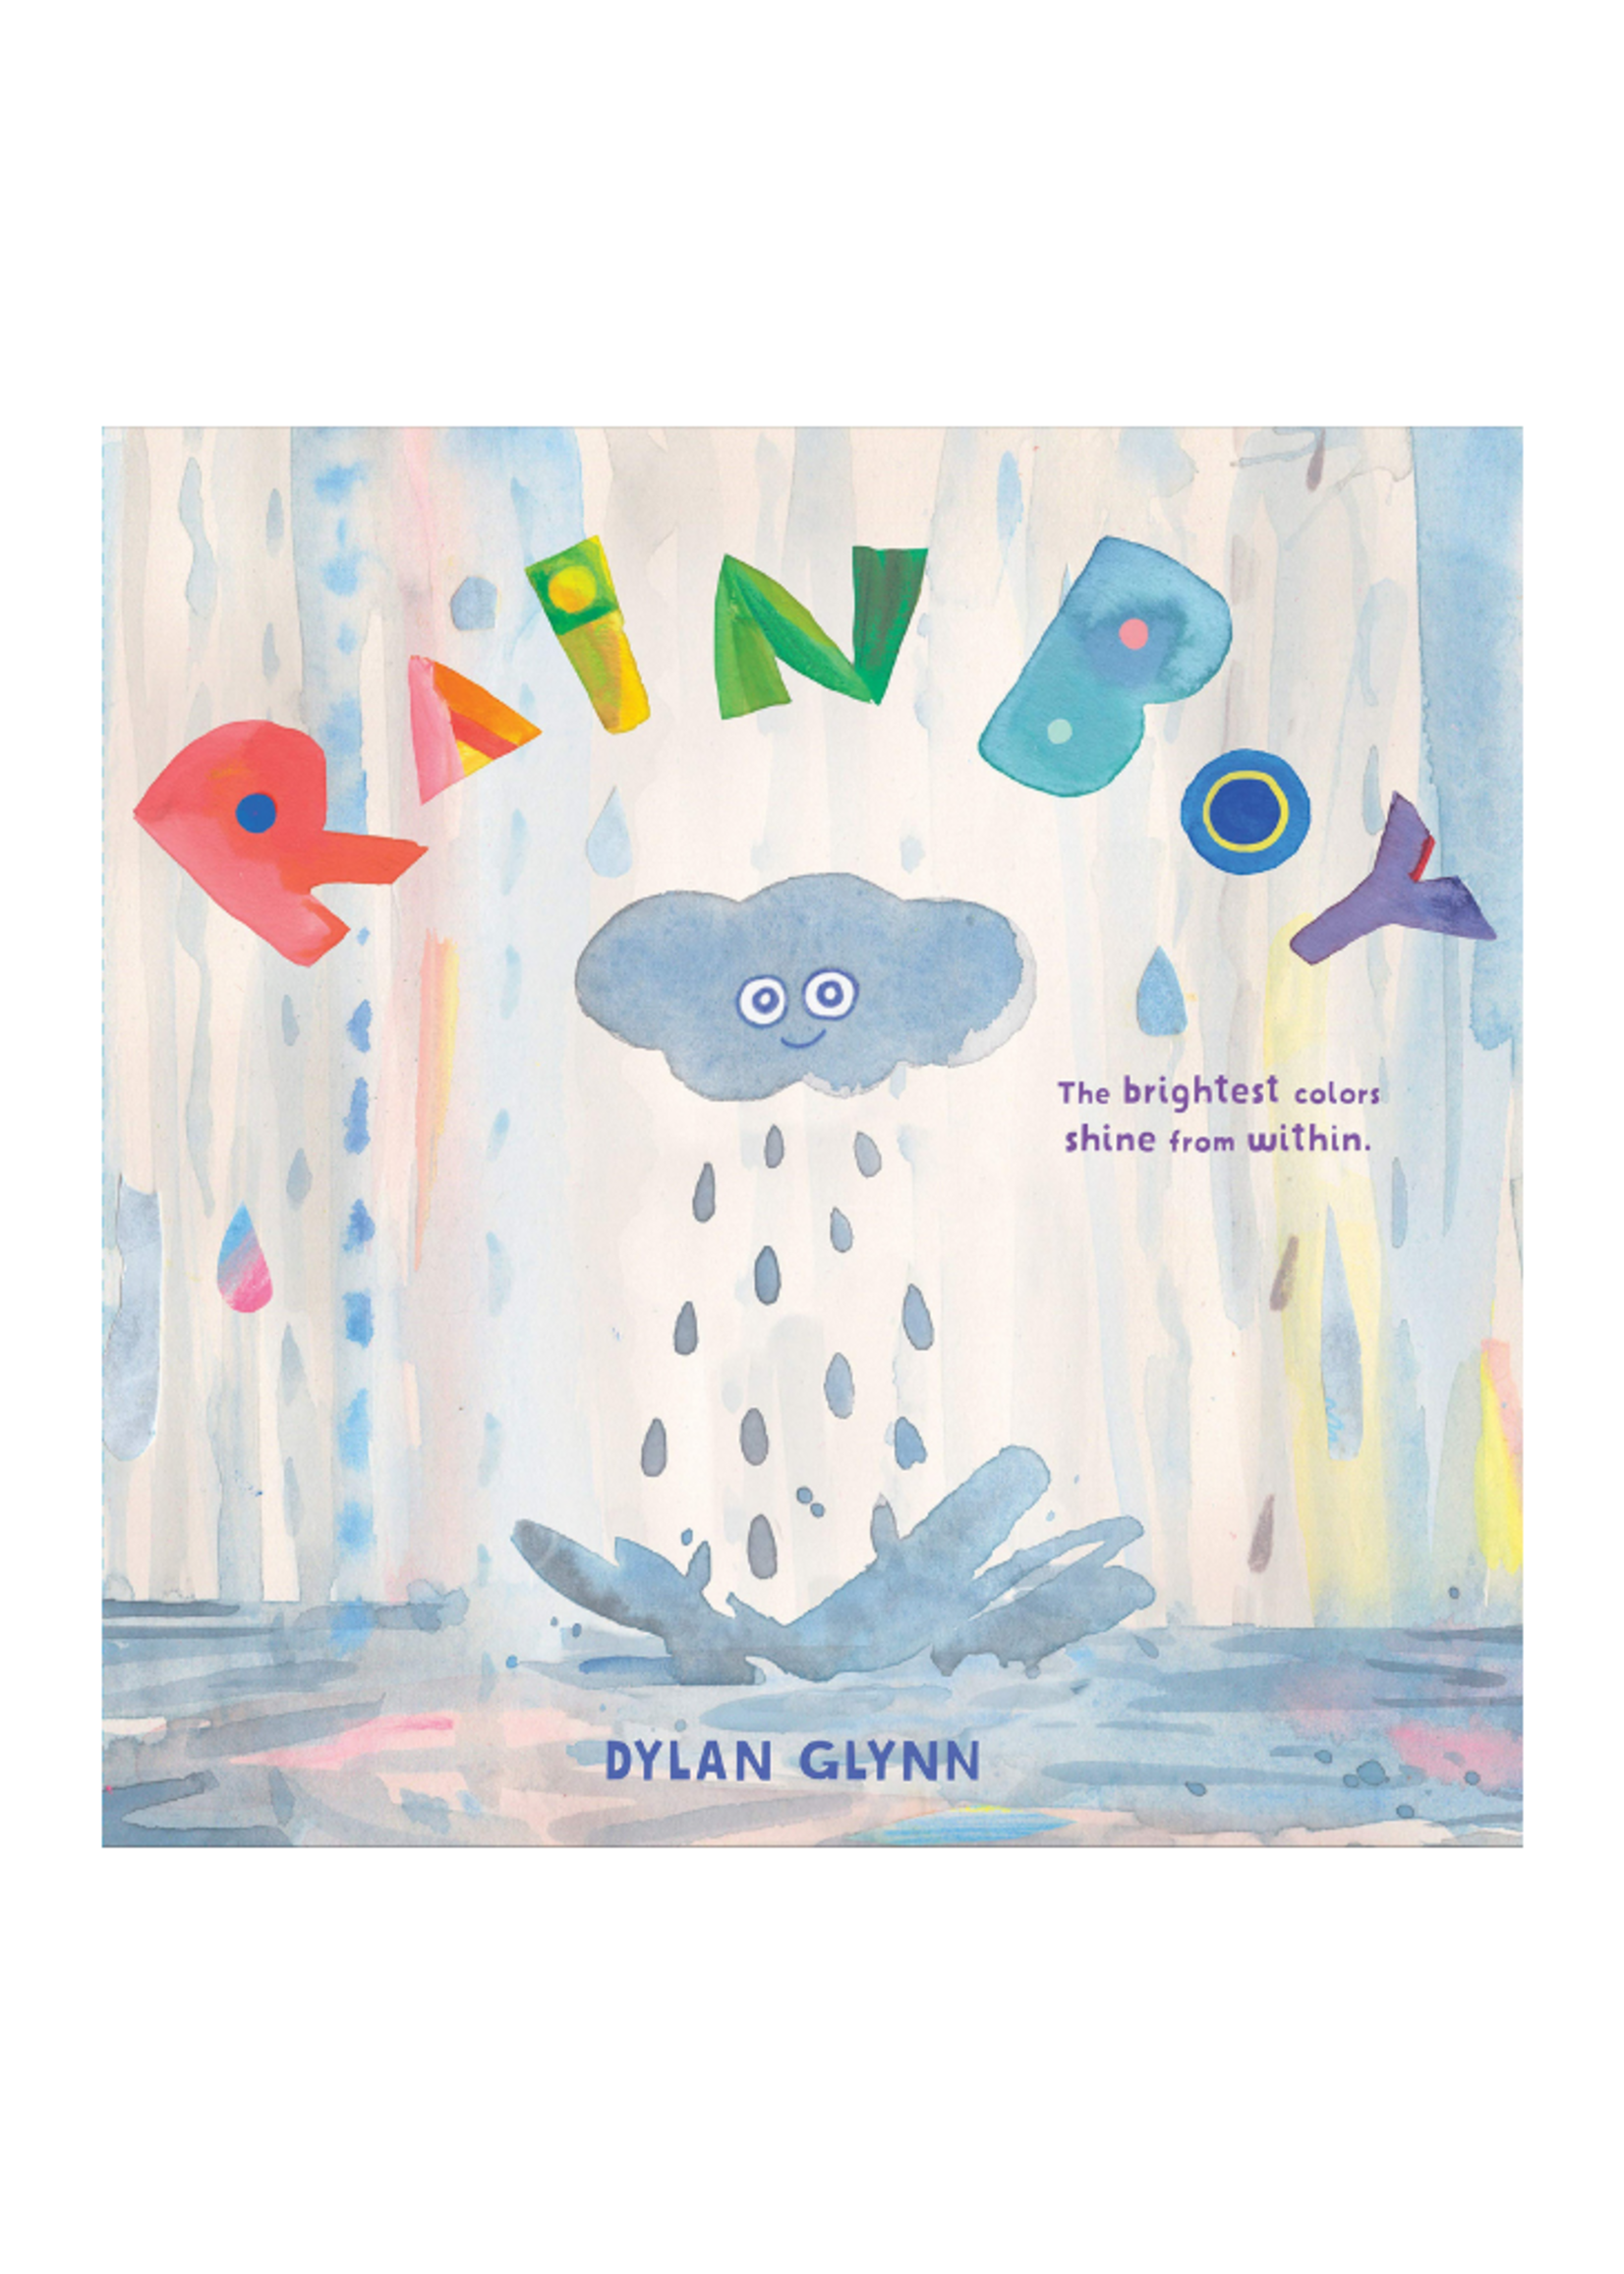 Chronicles Rain Boy by Dylan Glynn